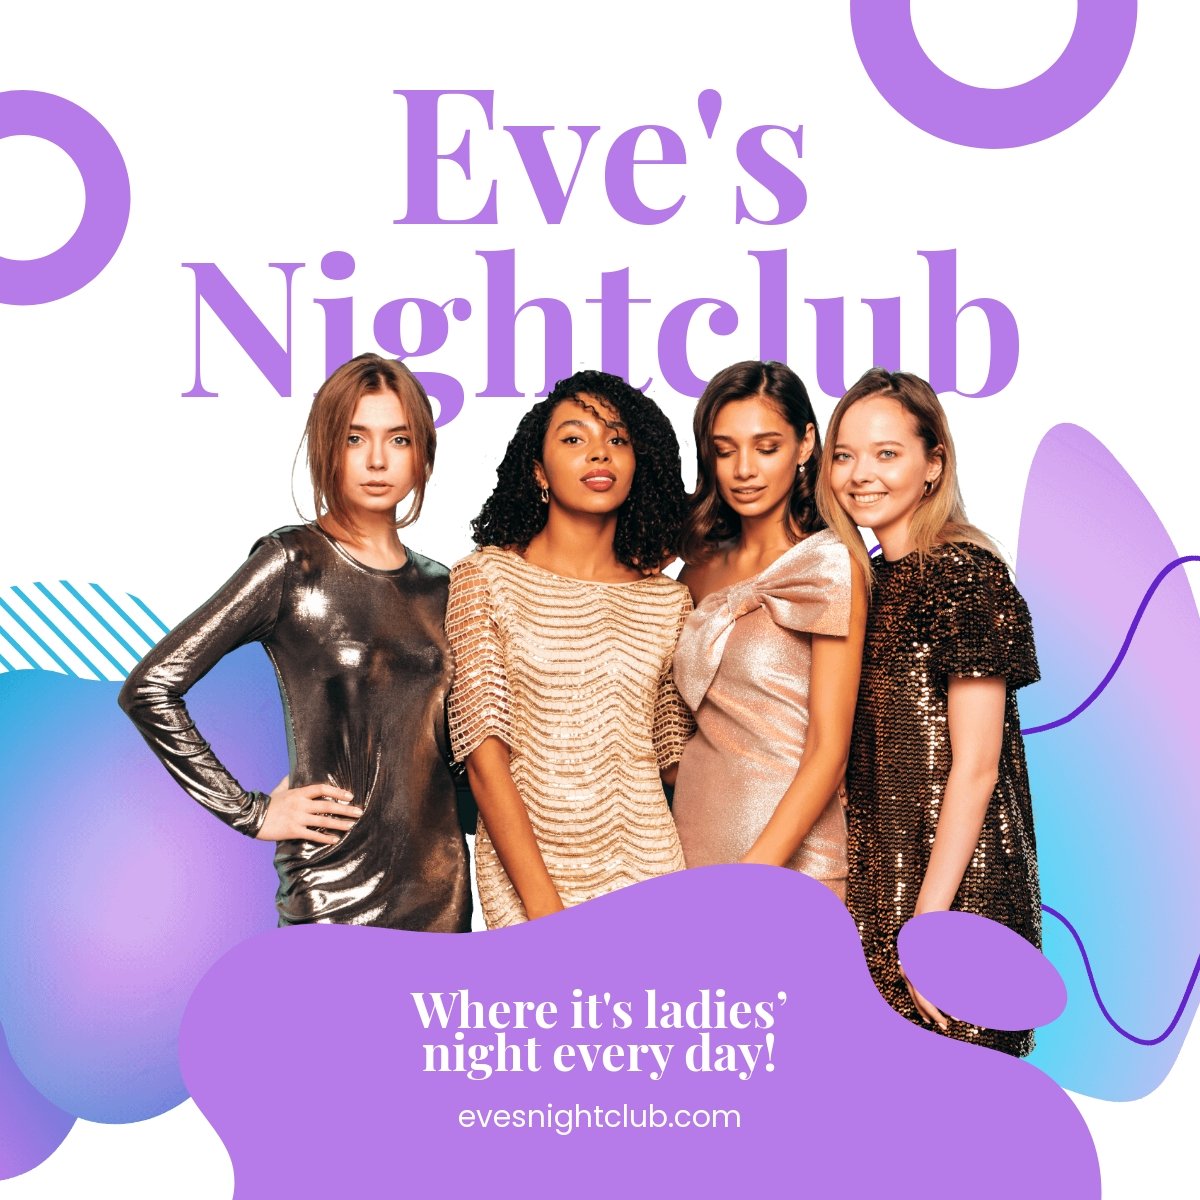 Ladies Nightclub Linkedin Post